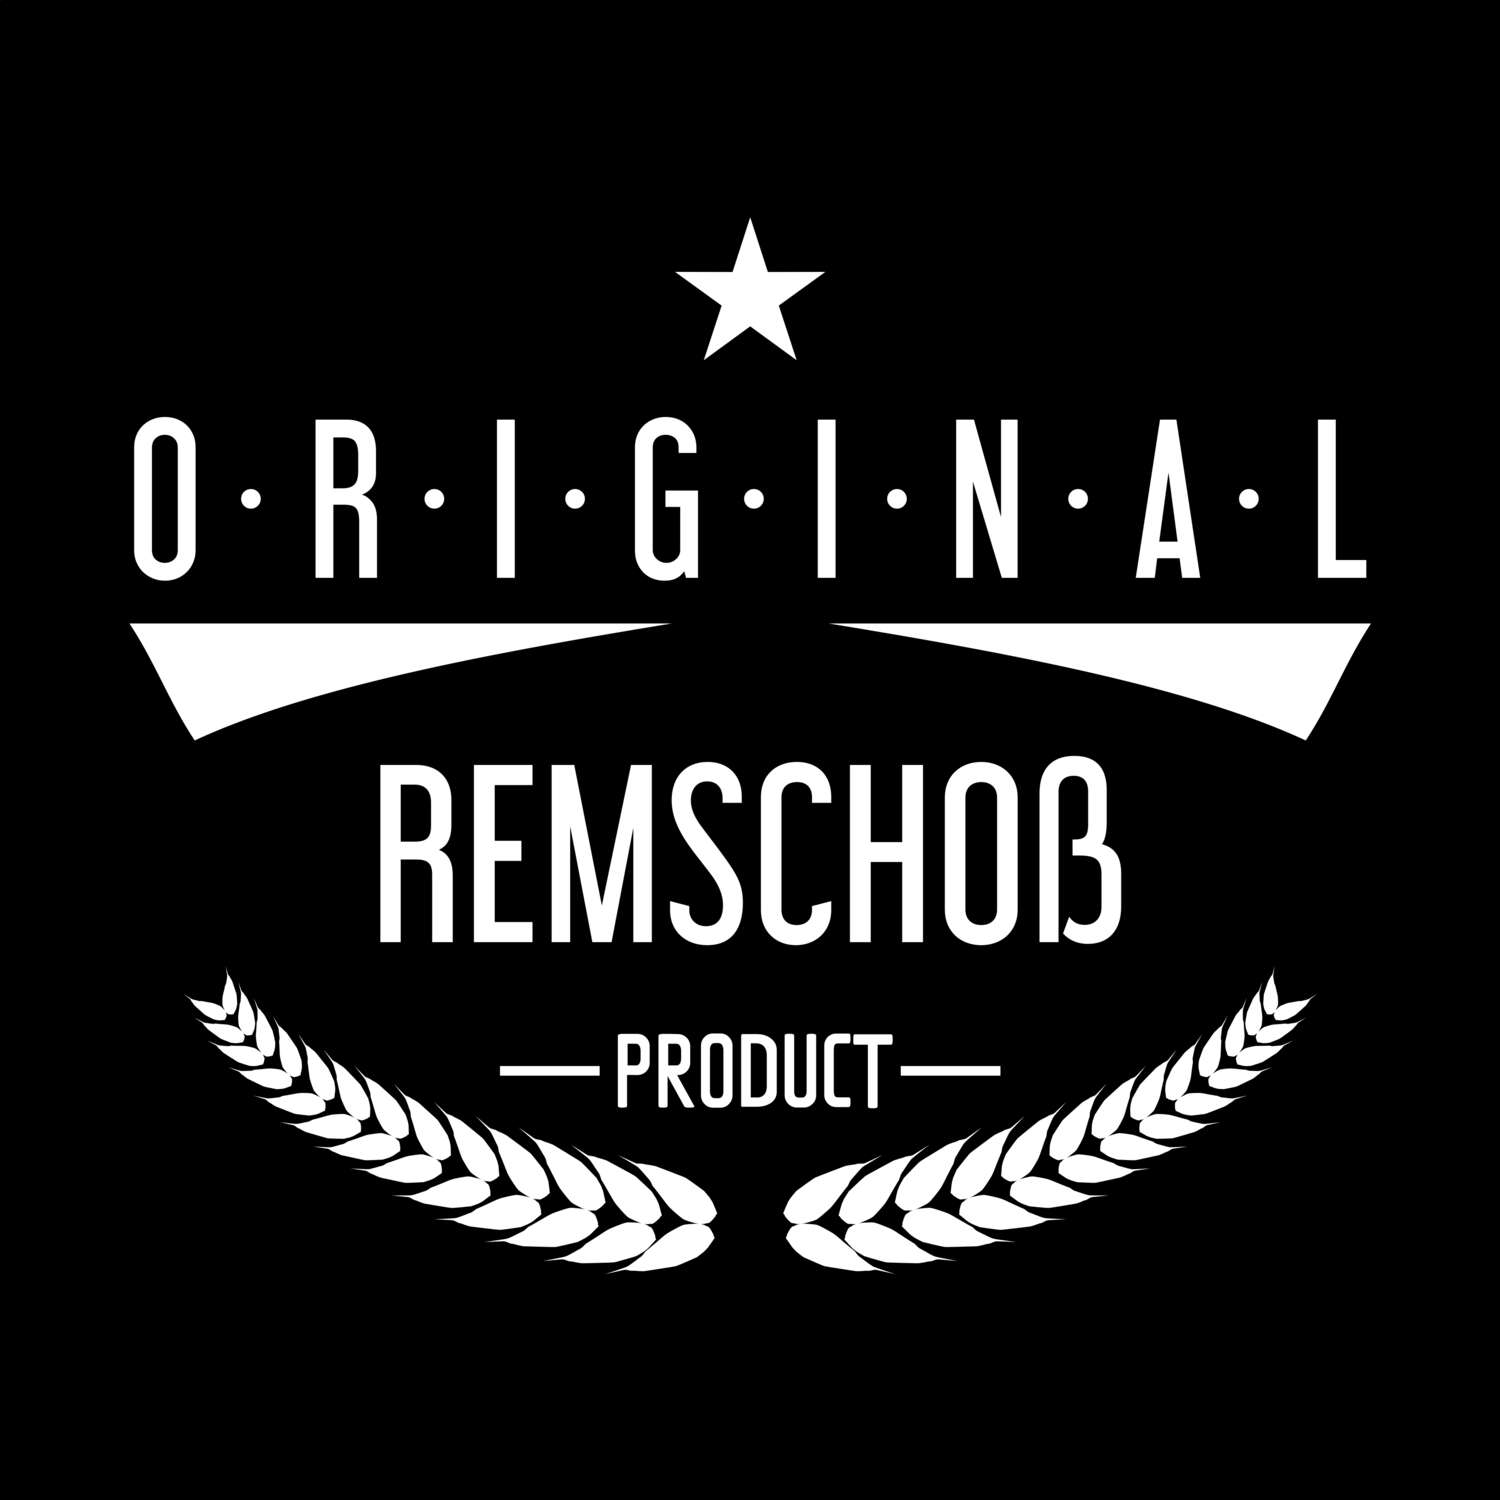 Remschoß T-Shirt »Original Product«